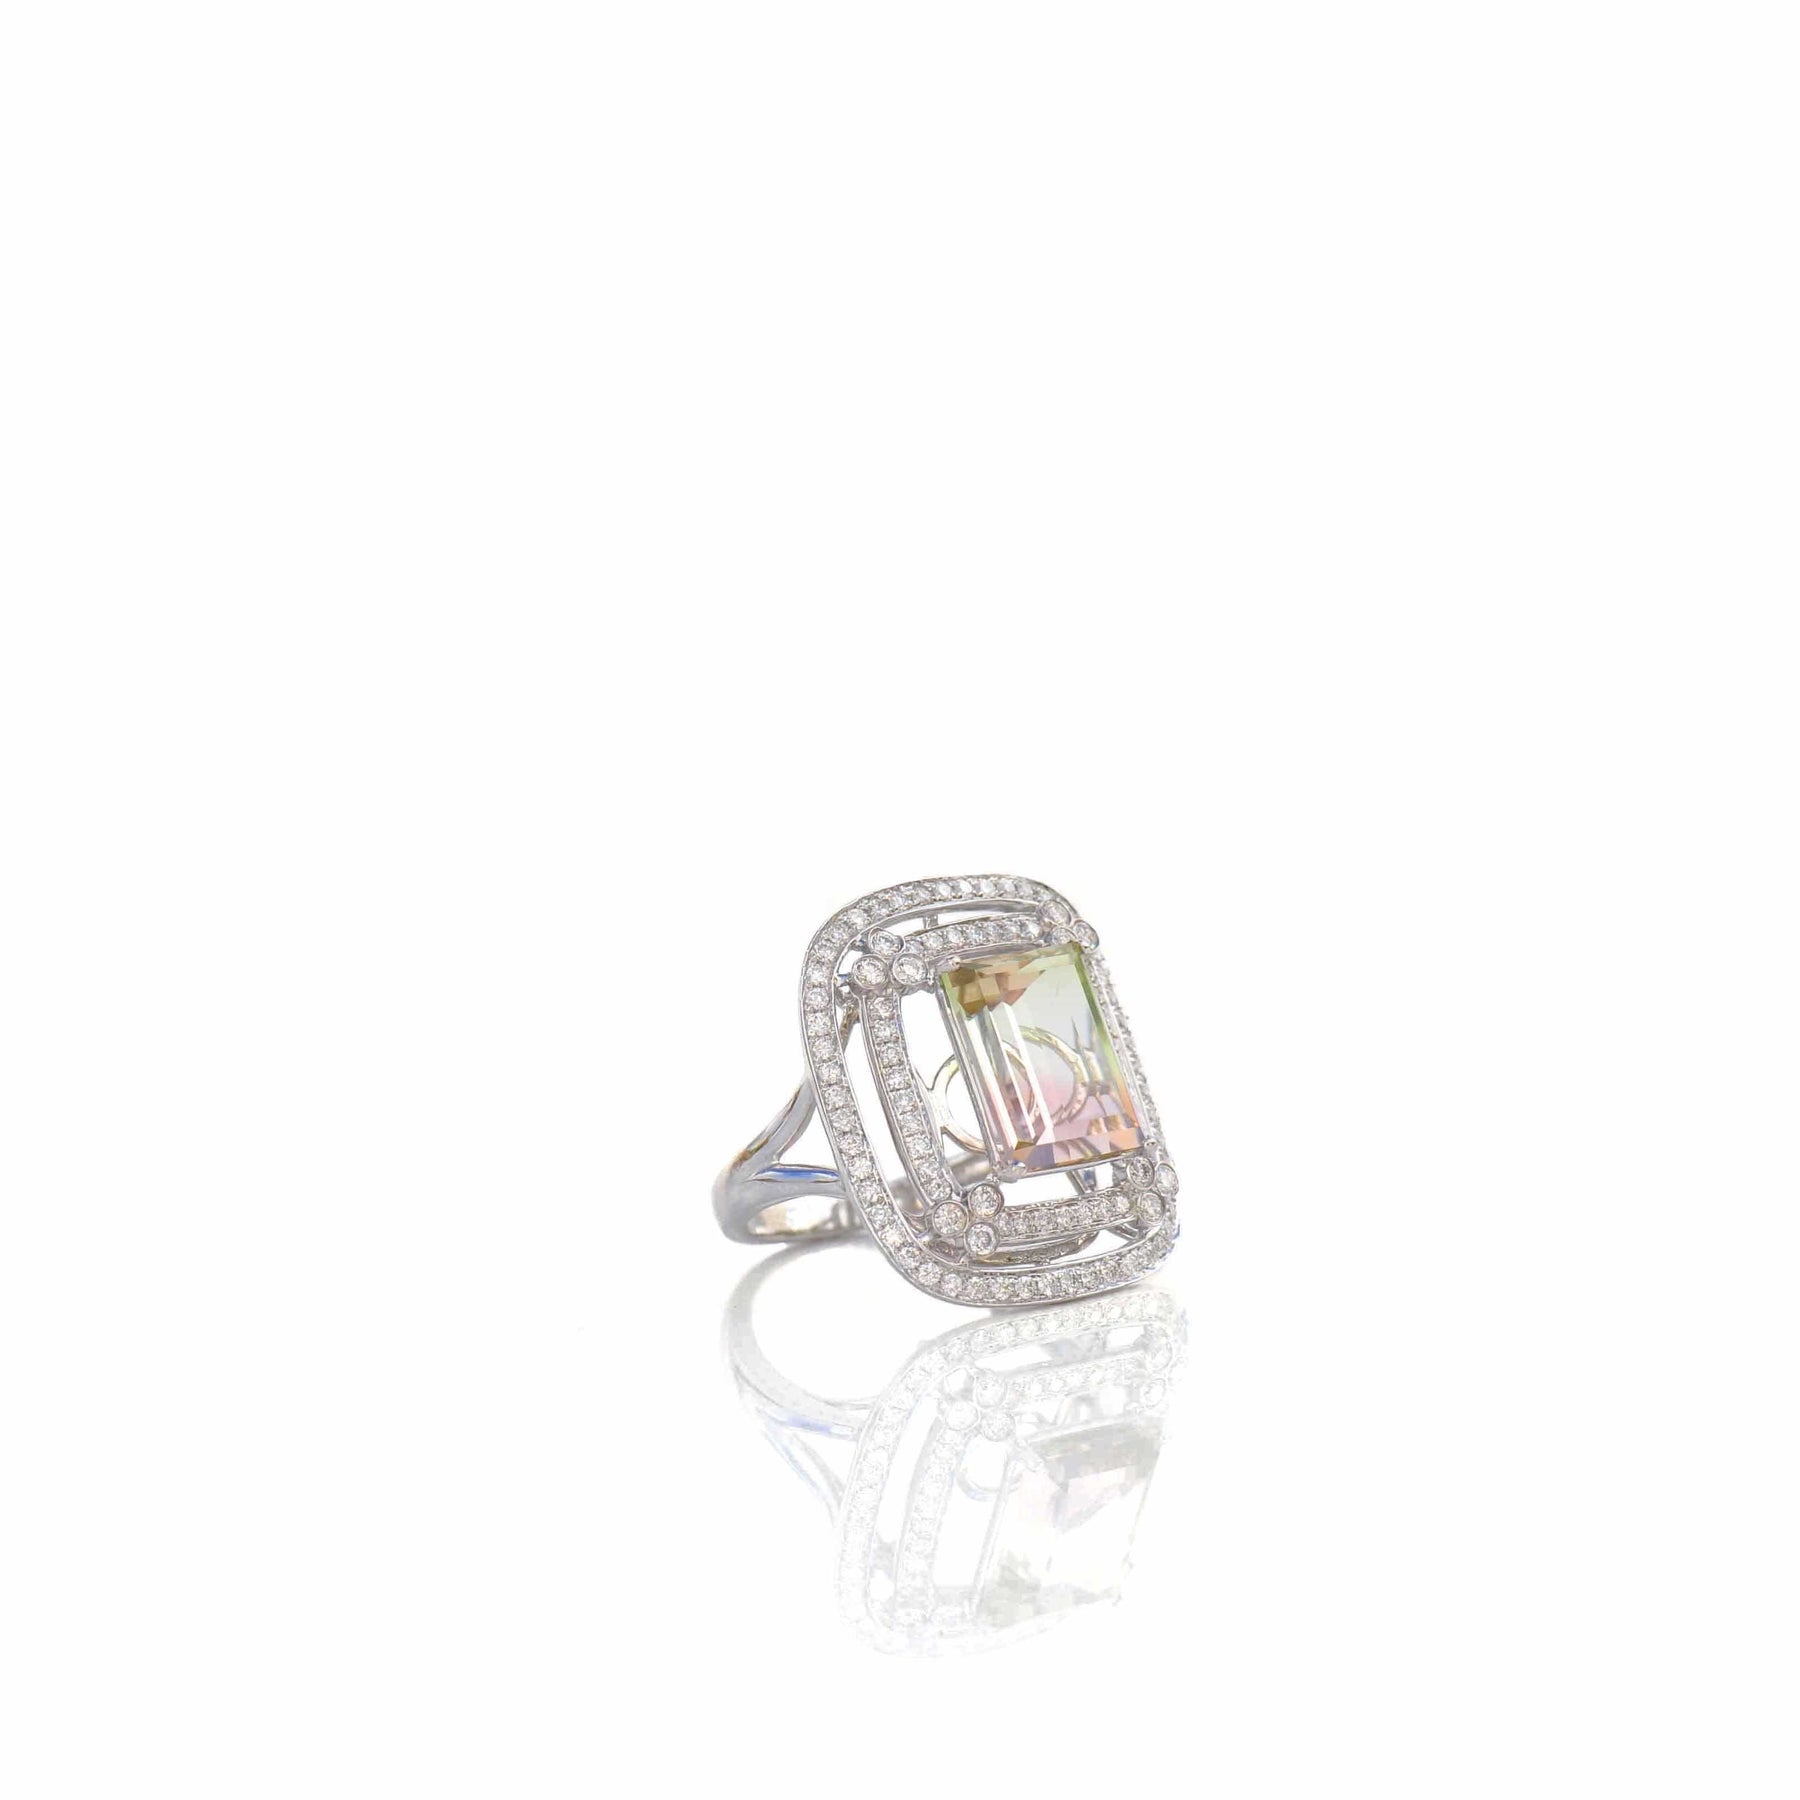 The Princess - Diamonds & Tourmaline Ring